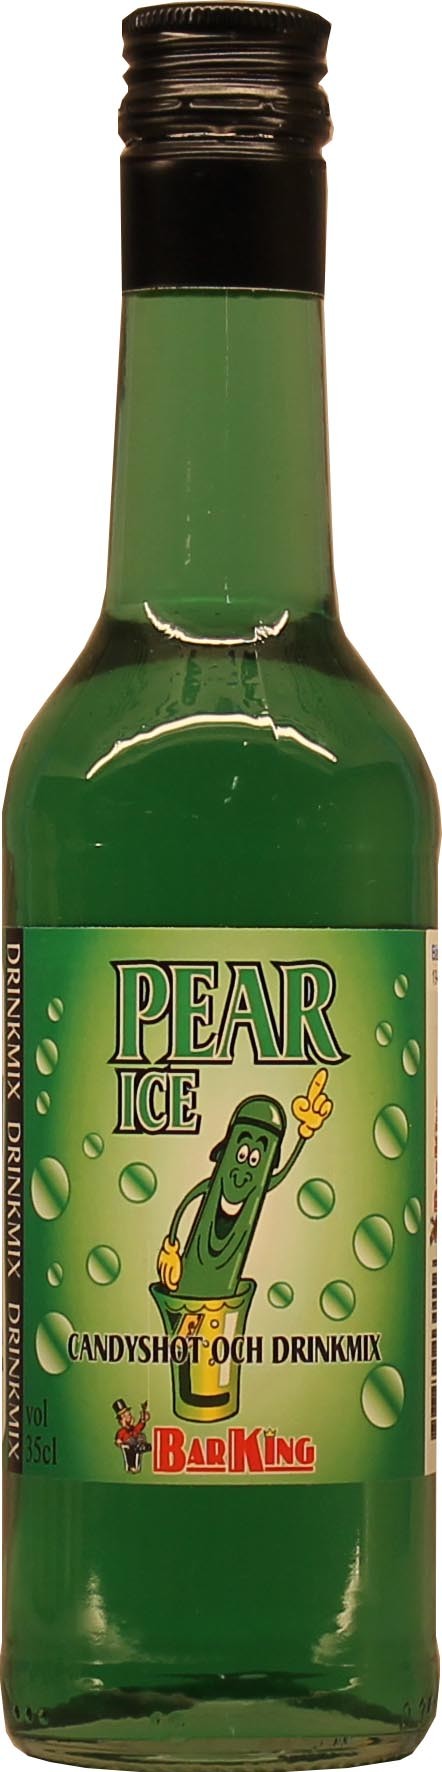 Pear Ice - Drinkmix med smak av päron.